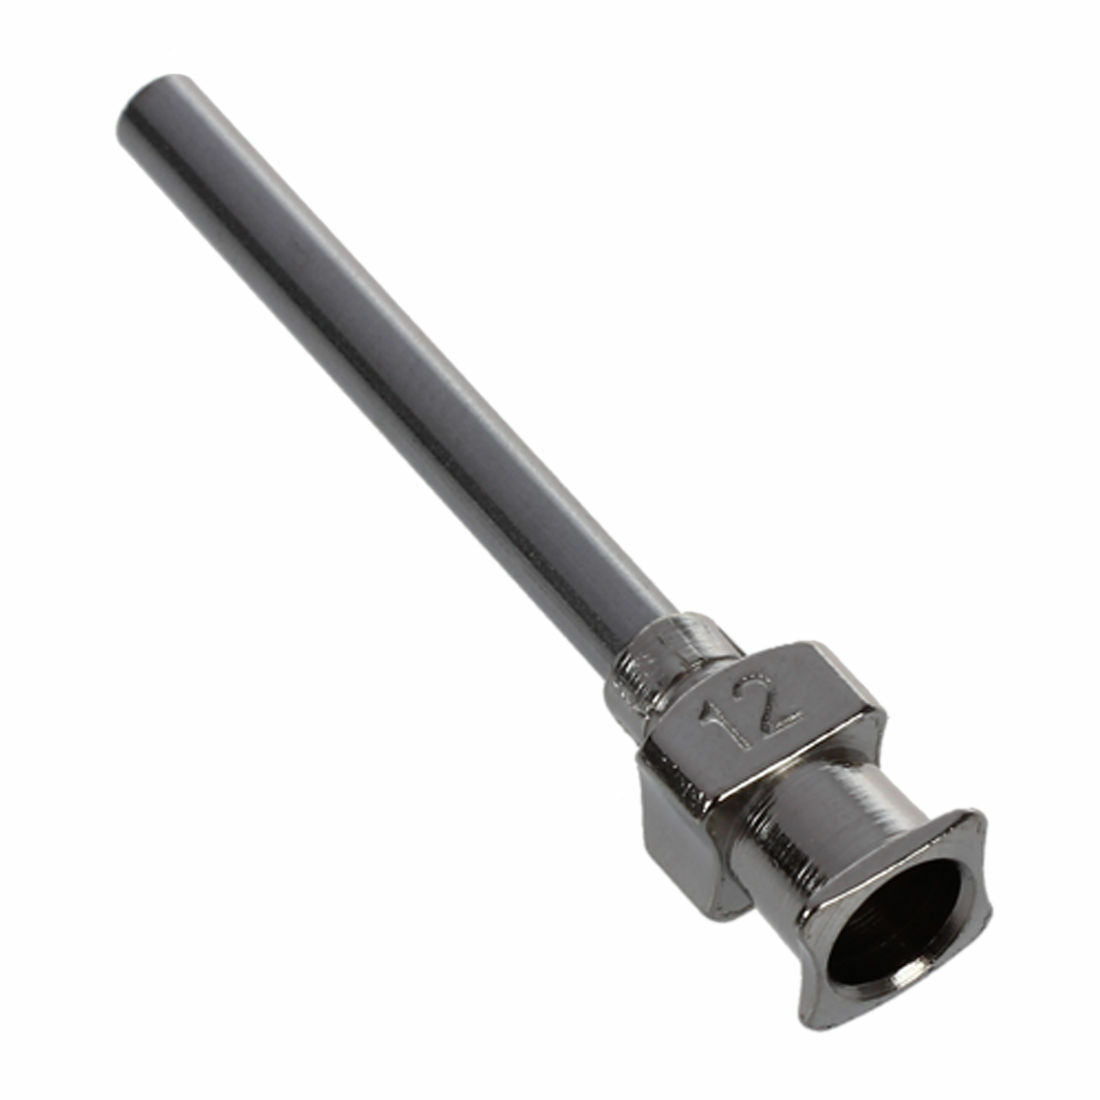 StaInless Steel Lock DisPensing Needle Tip, 12 Gauge, (Pack of 6) AD